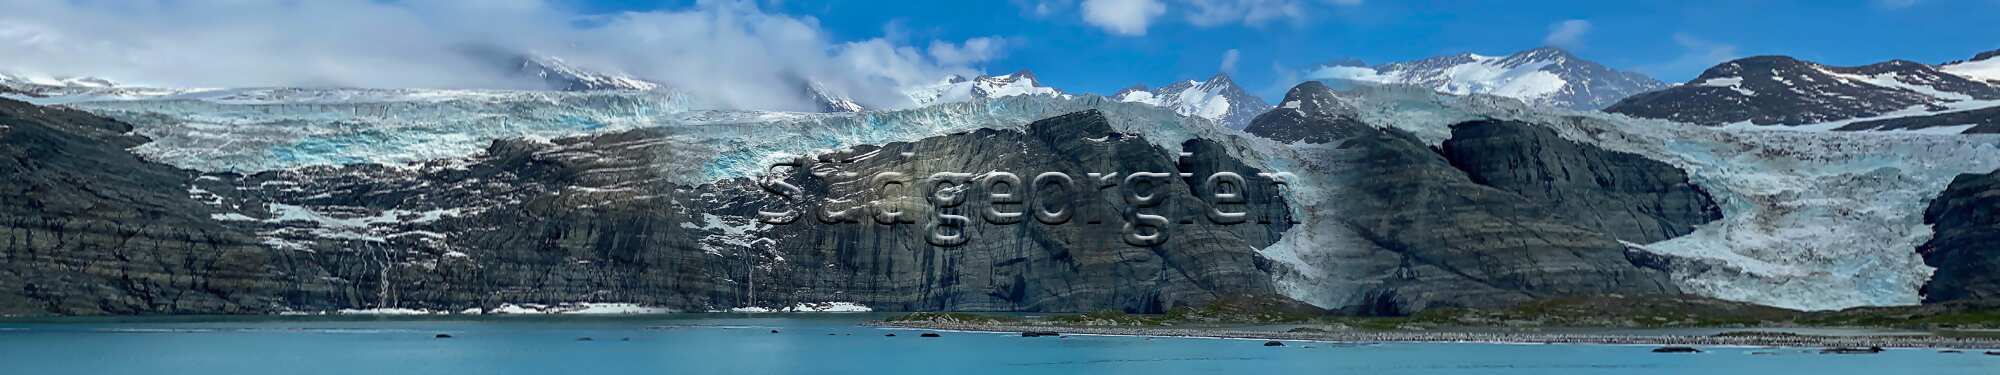 Gletscher auf der Insel Südgeorgien in der Region Antarktis